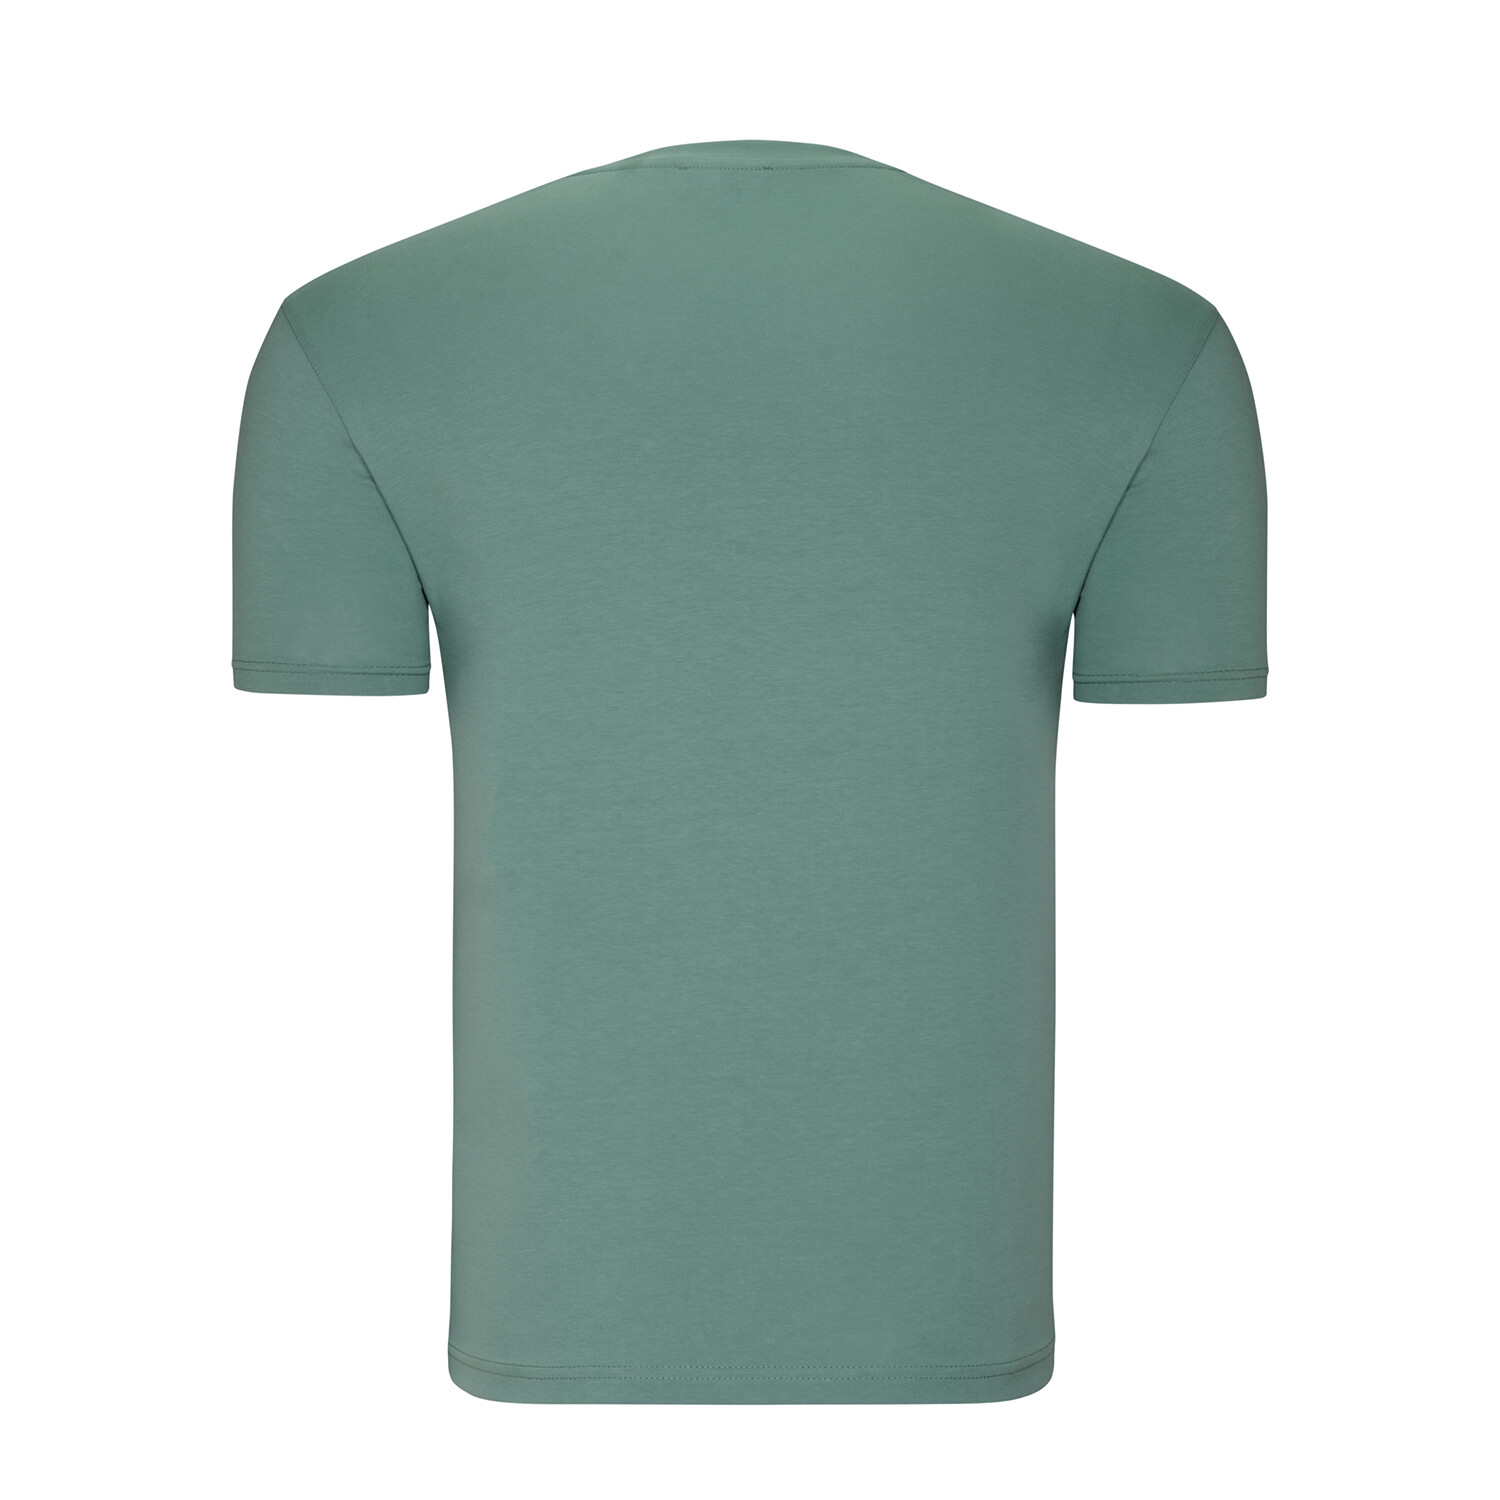 Rocco V-Neck Shirt // Light Green (Small) - Dewberry Tees & Polos ...